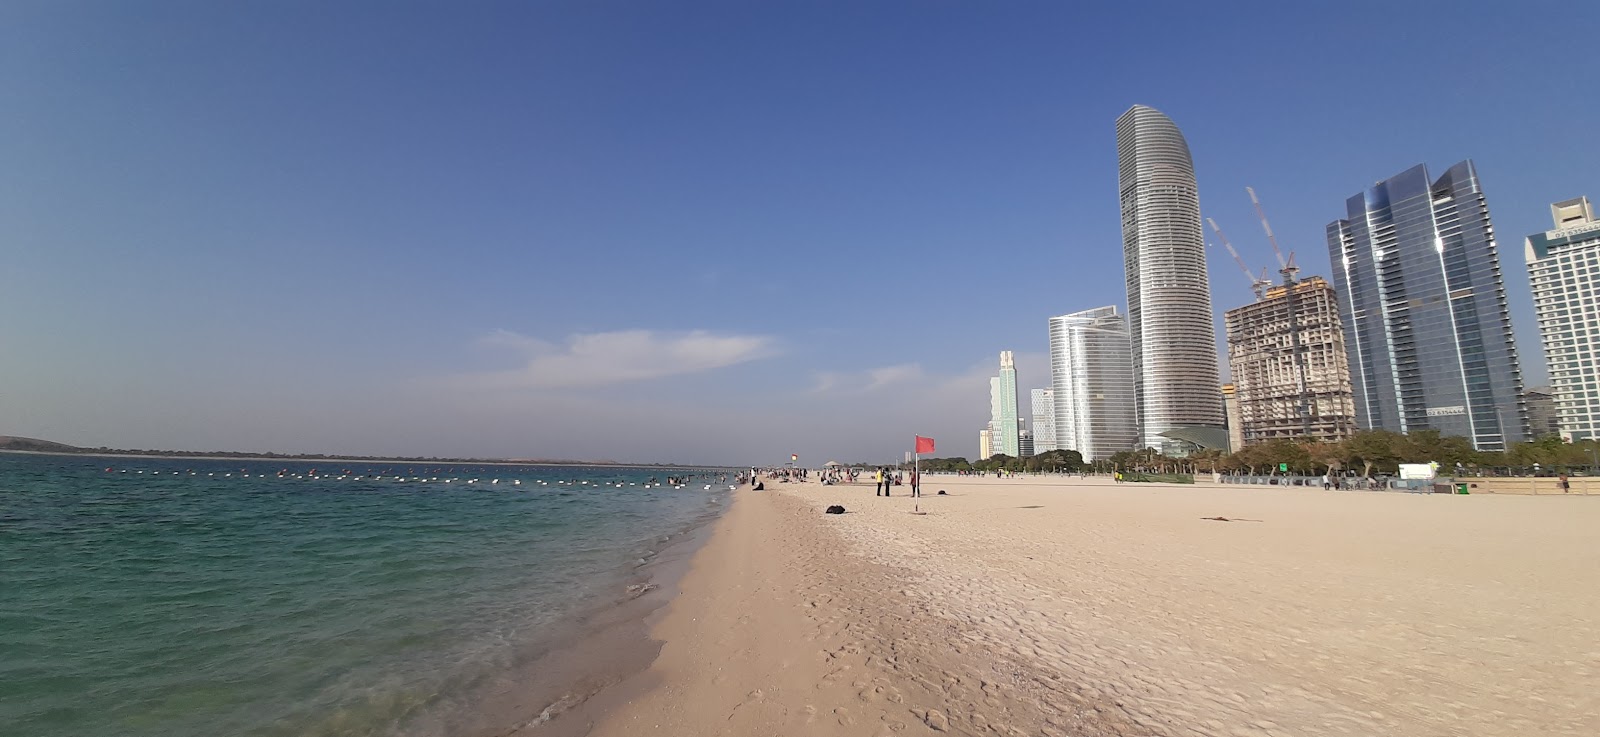 Abu Dhabi beach'in fotoğrafı geniş plaj ile birlikte